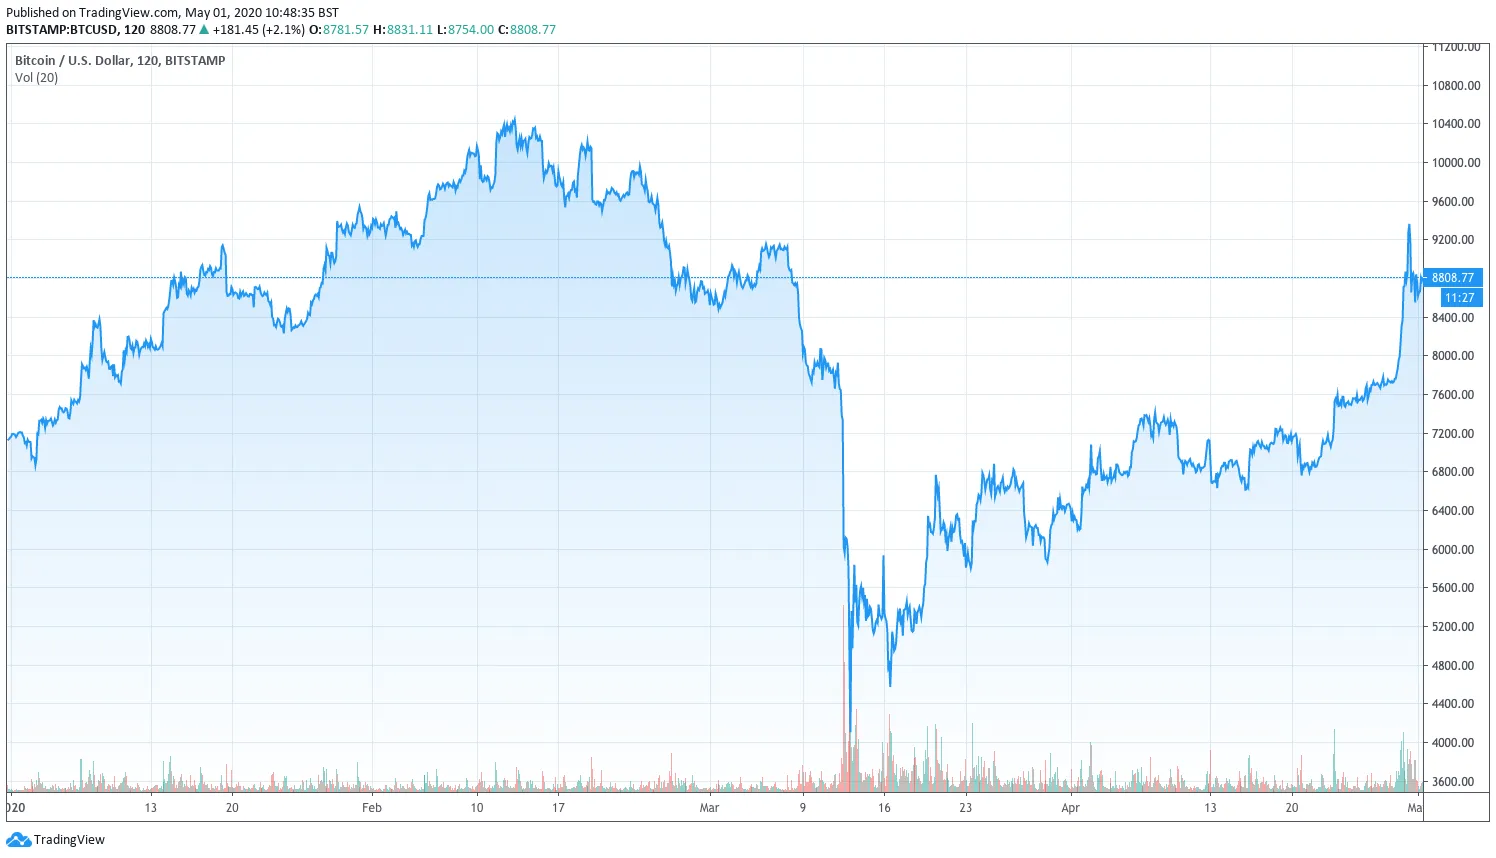 Bitcoin se ha recuperado desde el 12 de marzo. Imagen: TradingView.